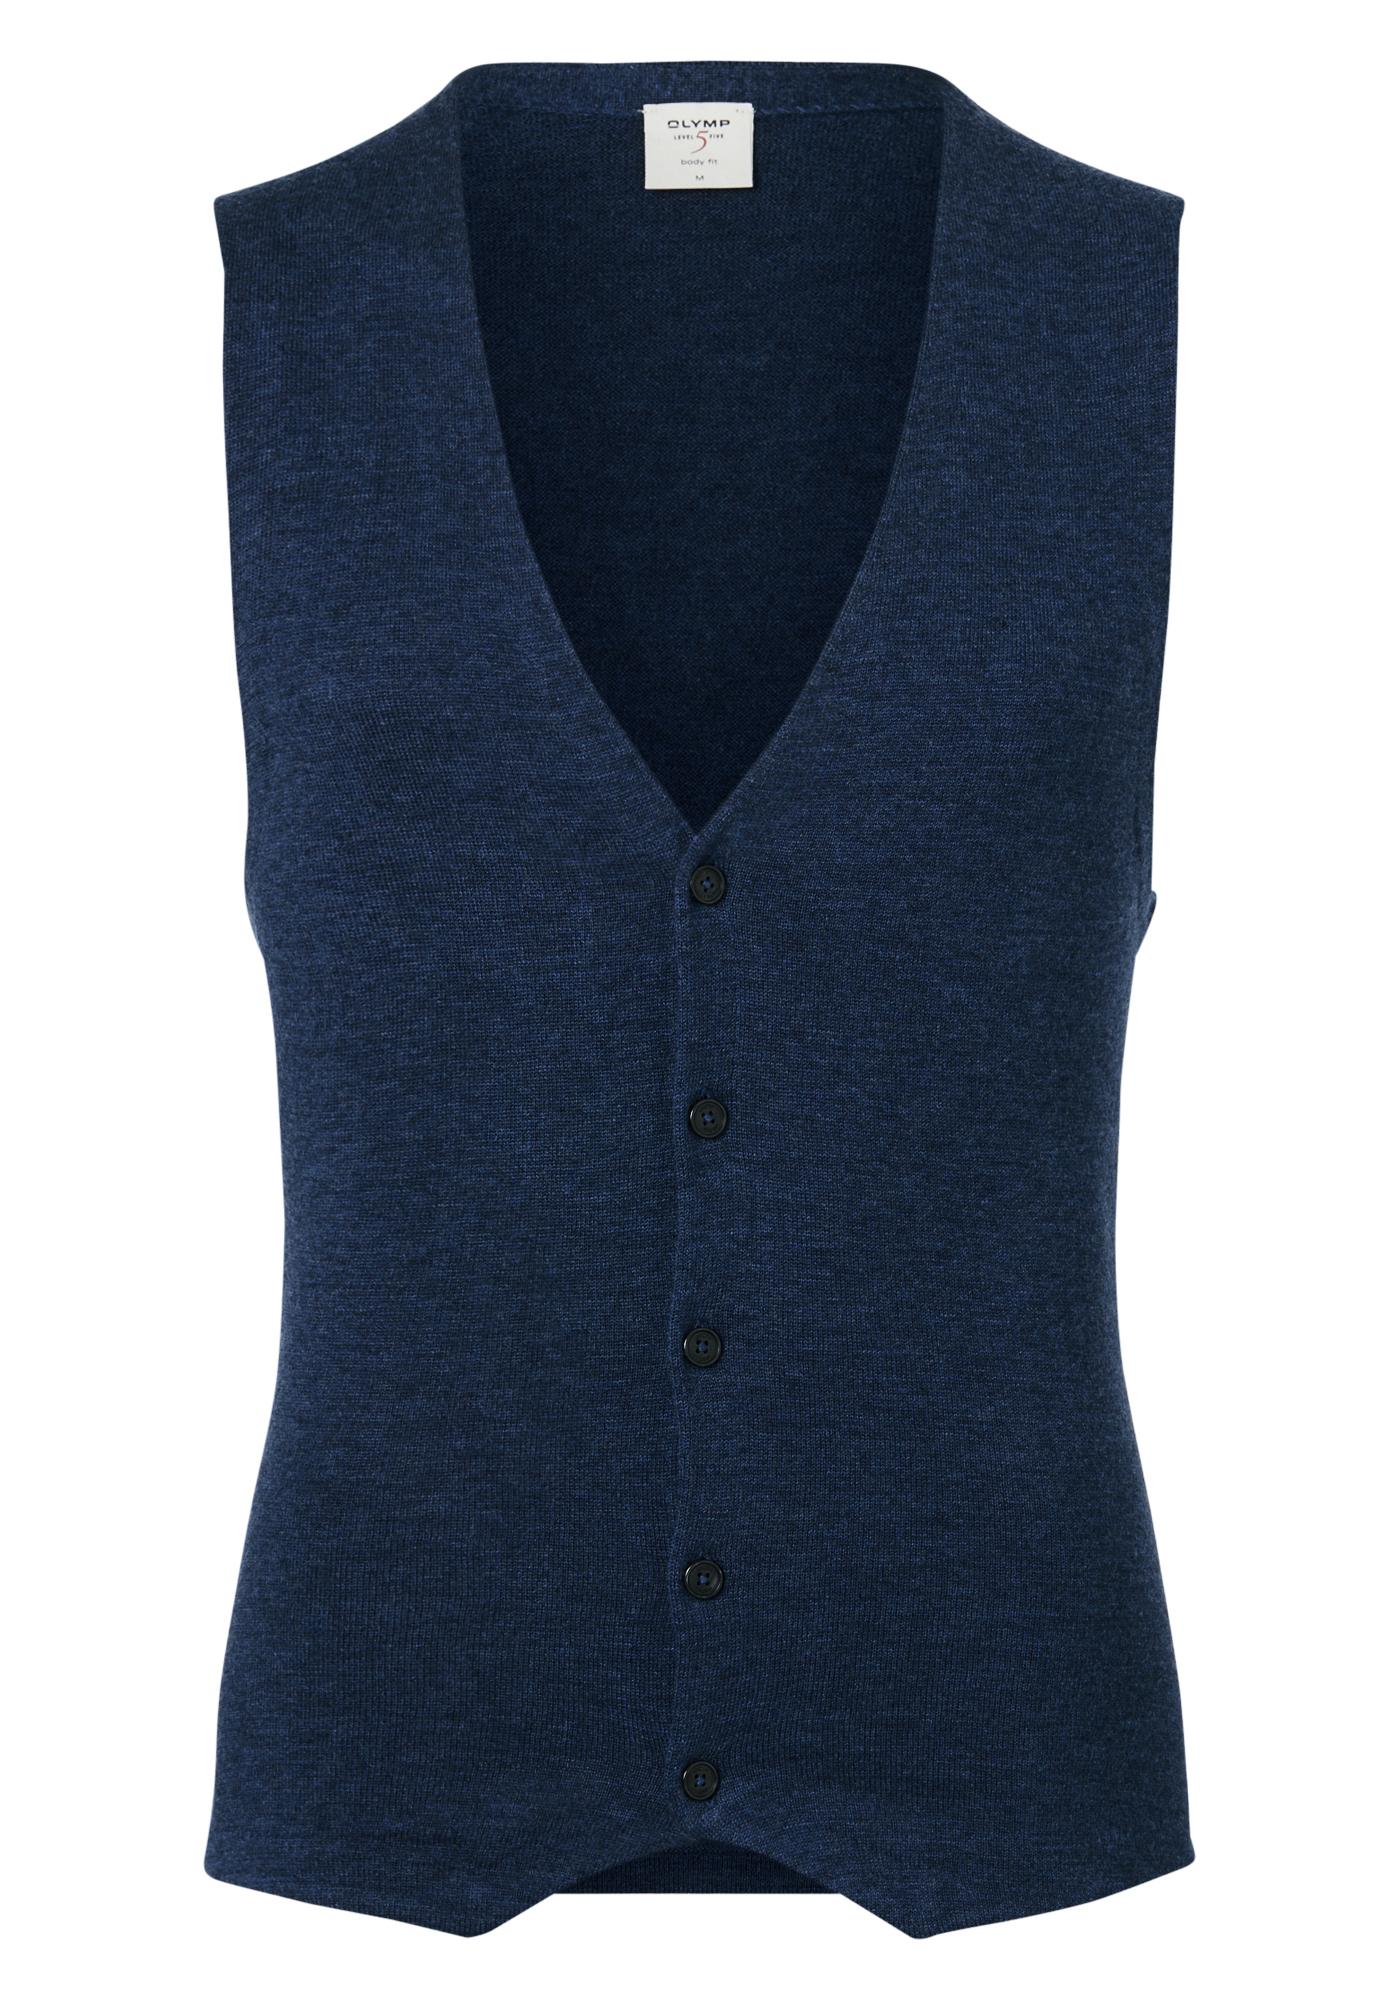 OLYMP Level 5 gilet, wol met zijde, blauw mouwloos vest Shop de nieuwste voorjaarsmode